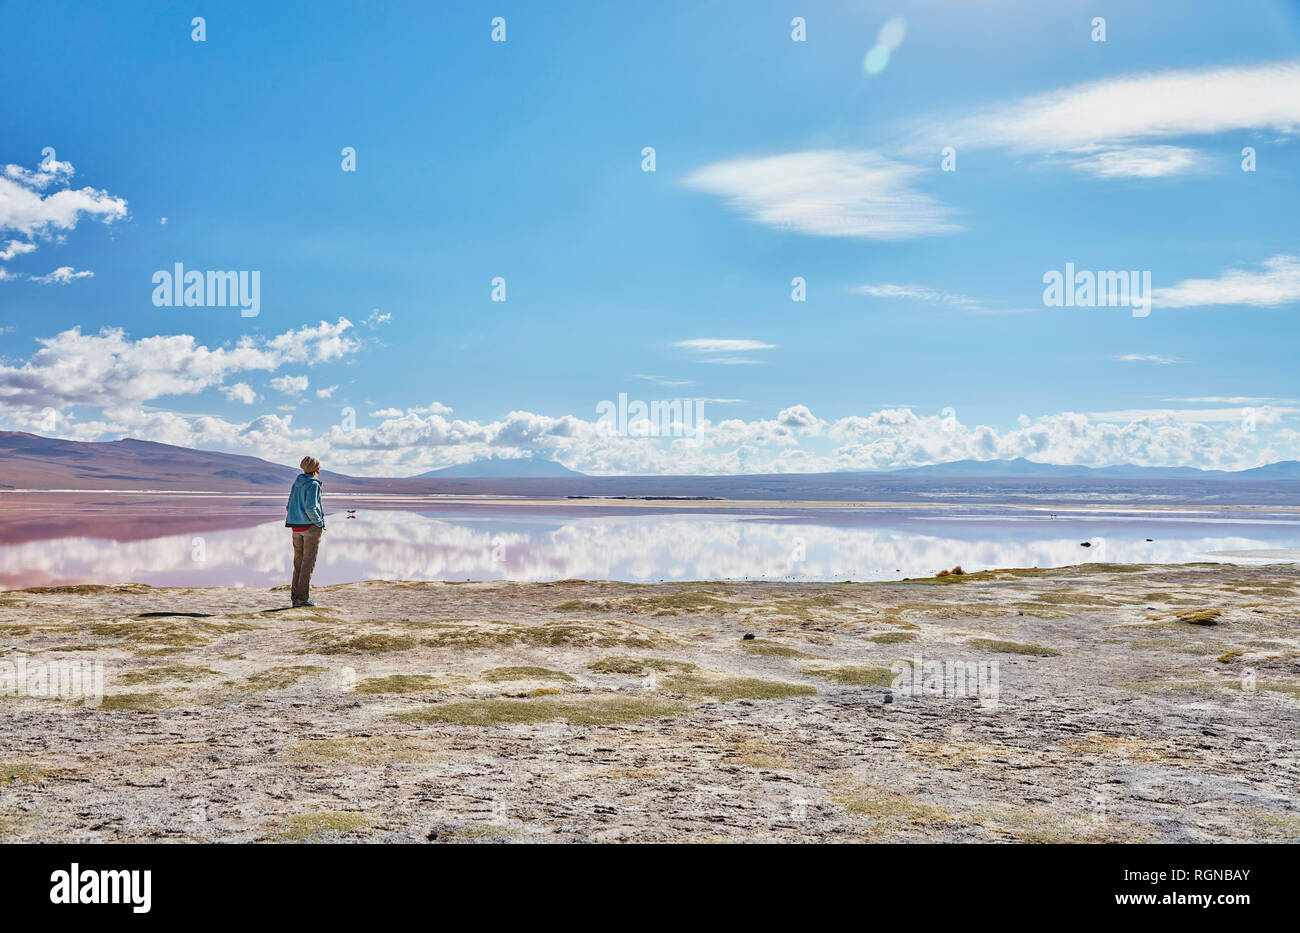 La Bolivie, Laguna Colorada, femme debout au lakeshore looking at view Banque D'Images